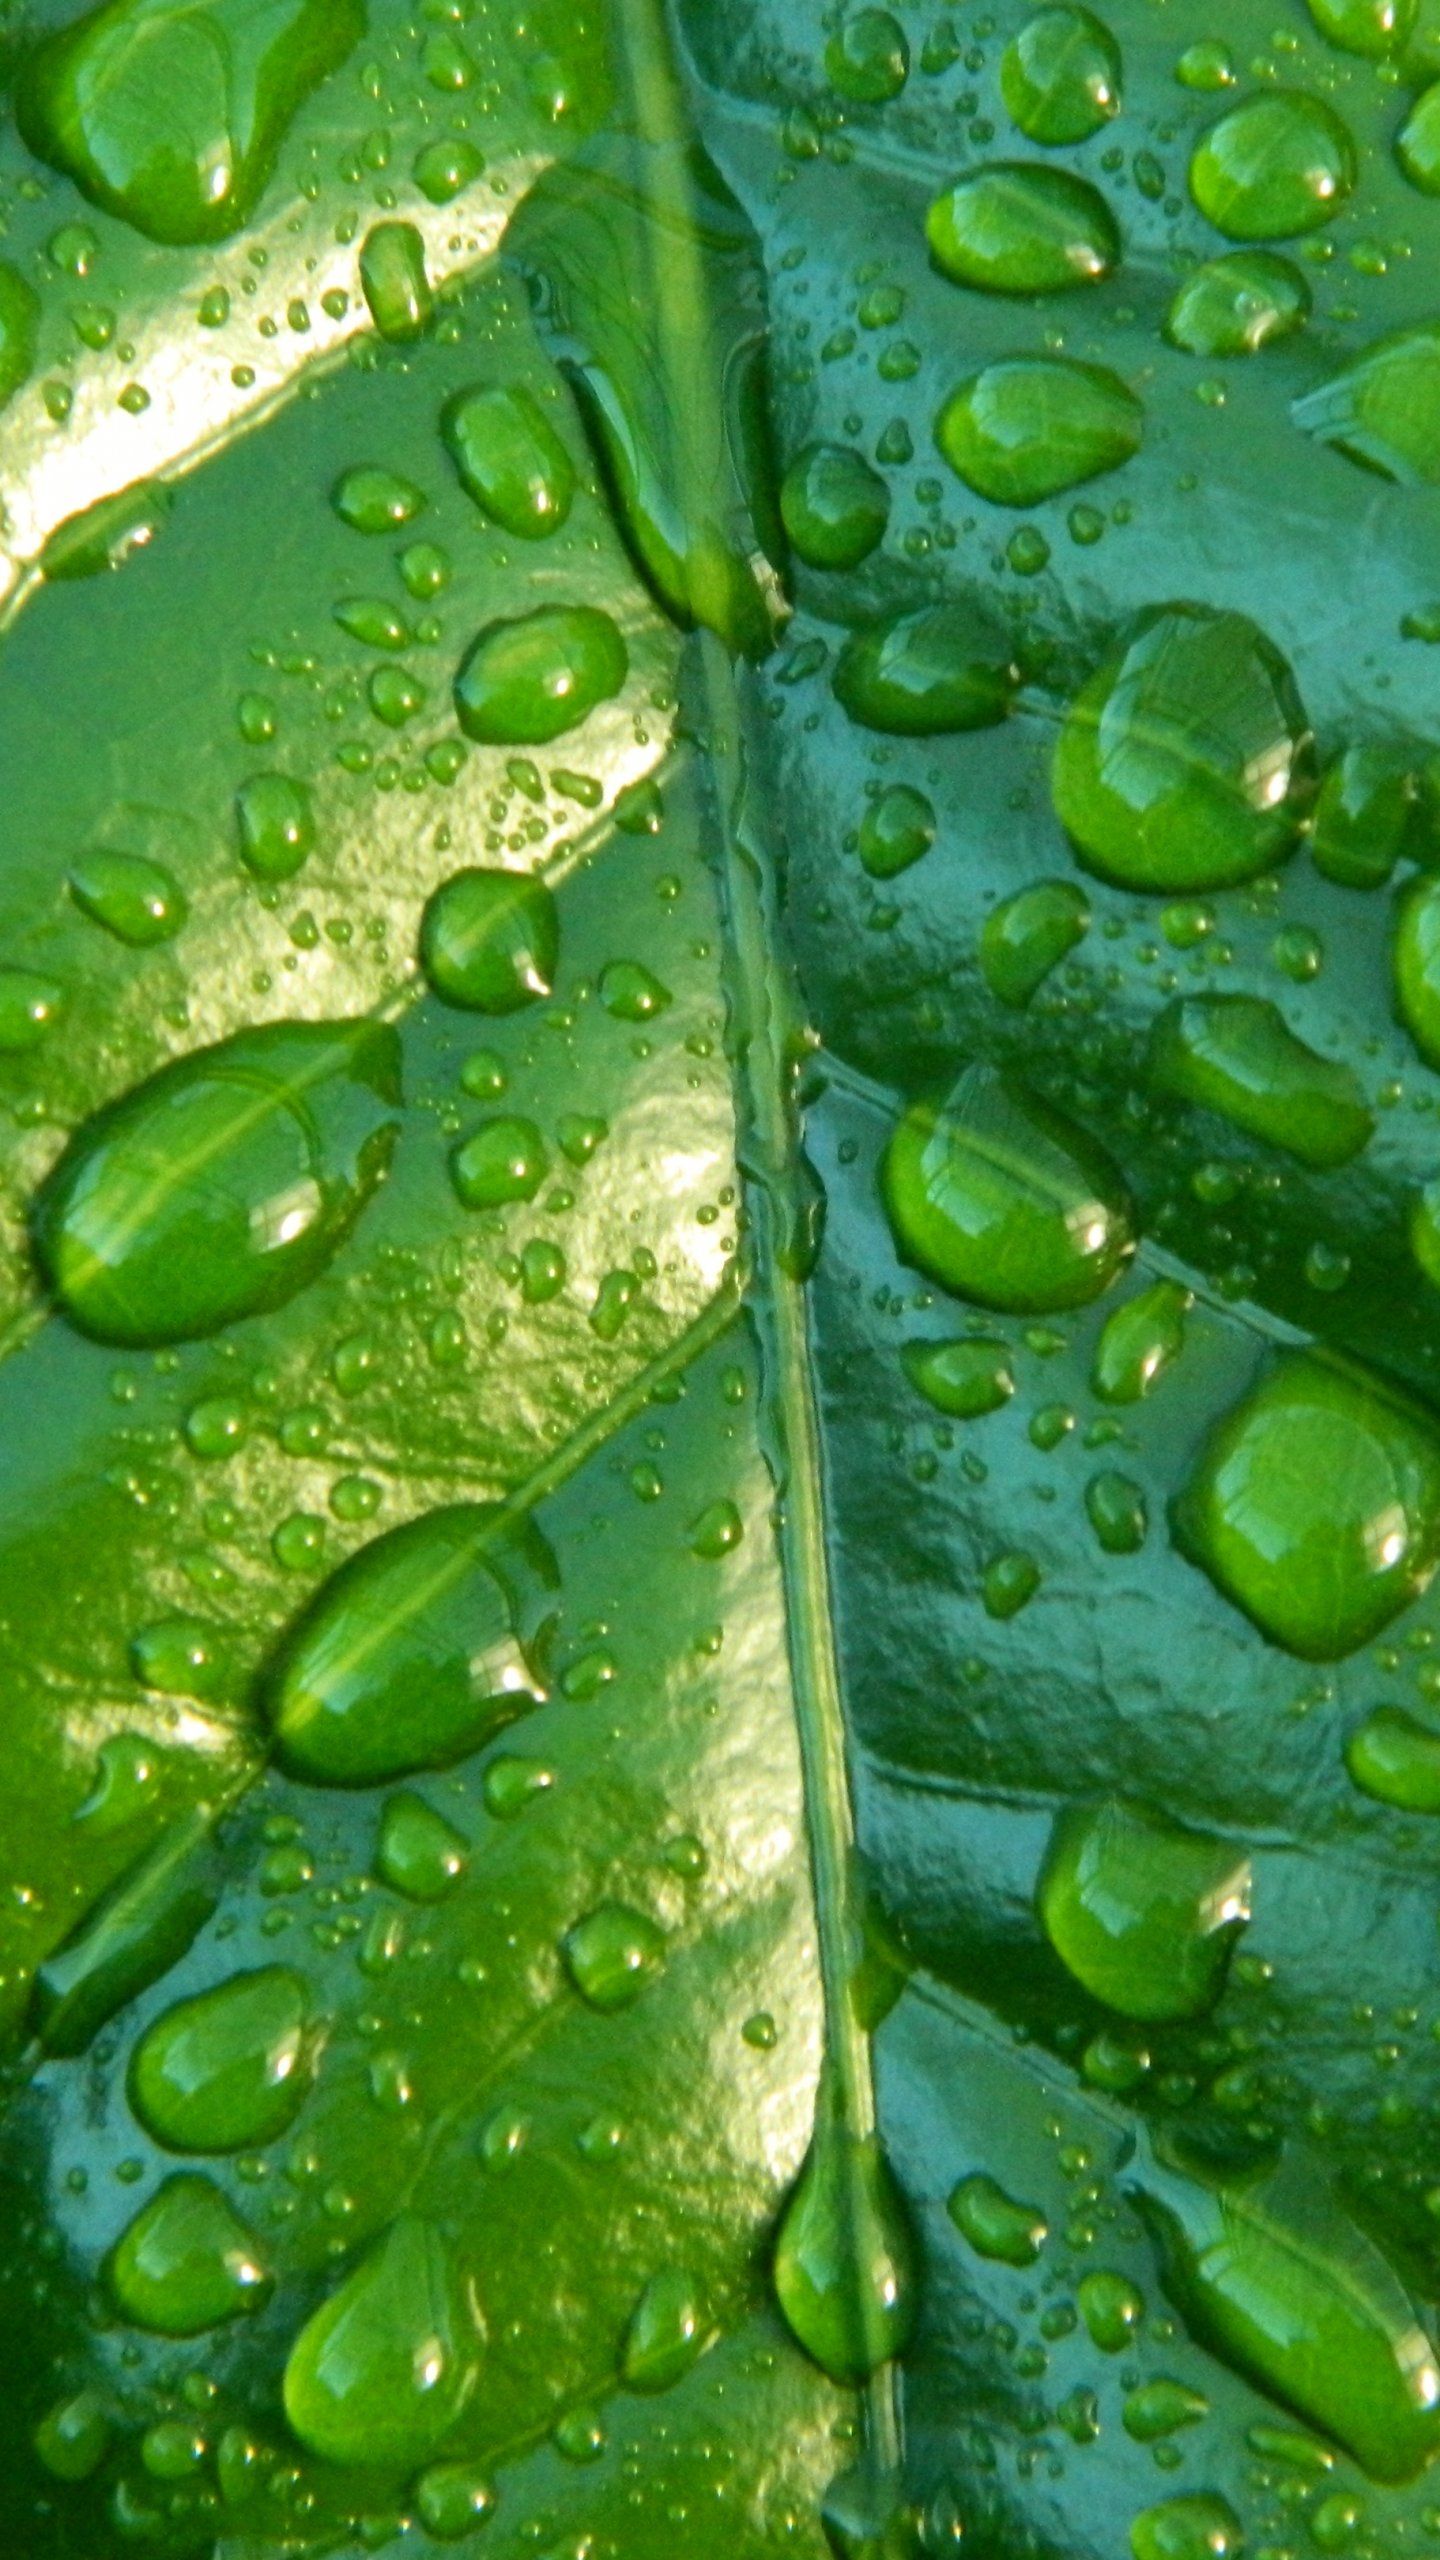 Raindrops on Leaf Wallpaper, Android & Desktop Background